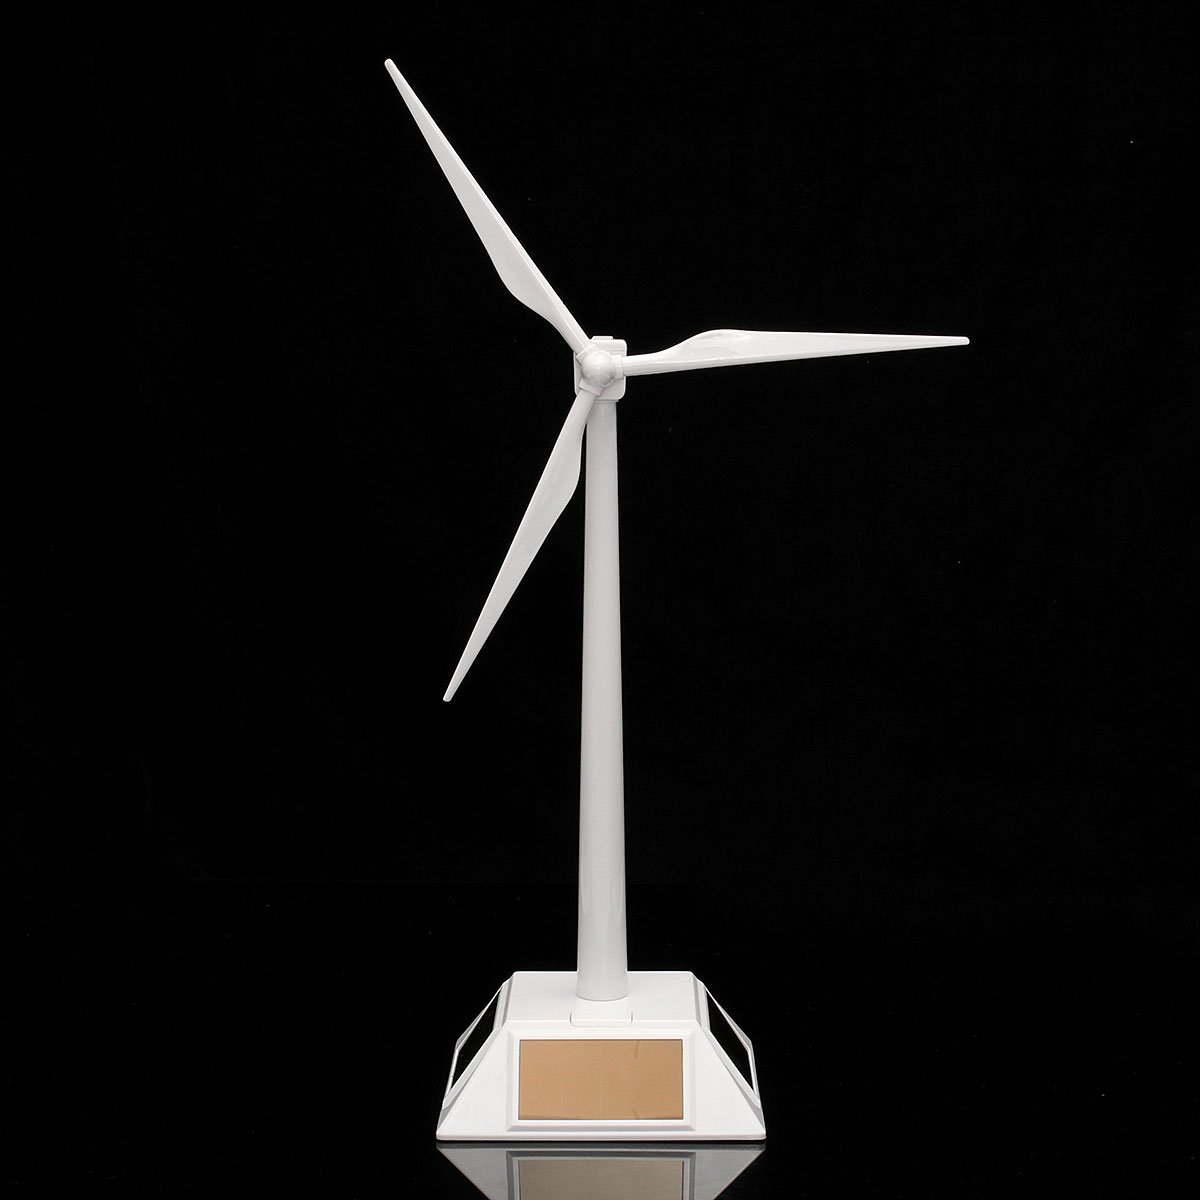 Plastic Solar Powered Windmill Wind Mill Turbine Teaching Tool & Desktop Display Tray Holder 1